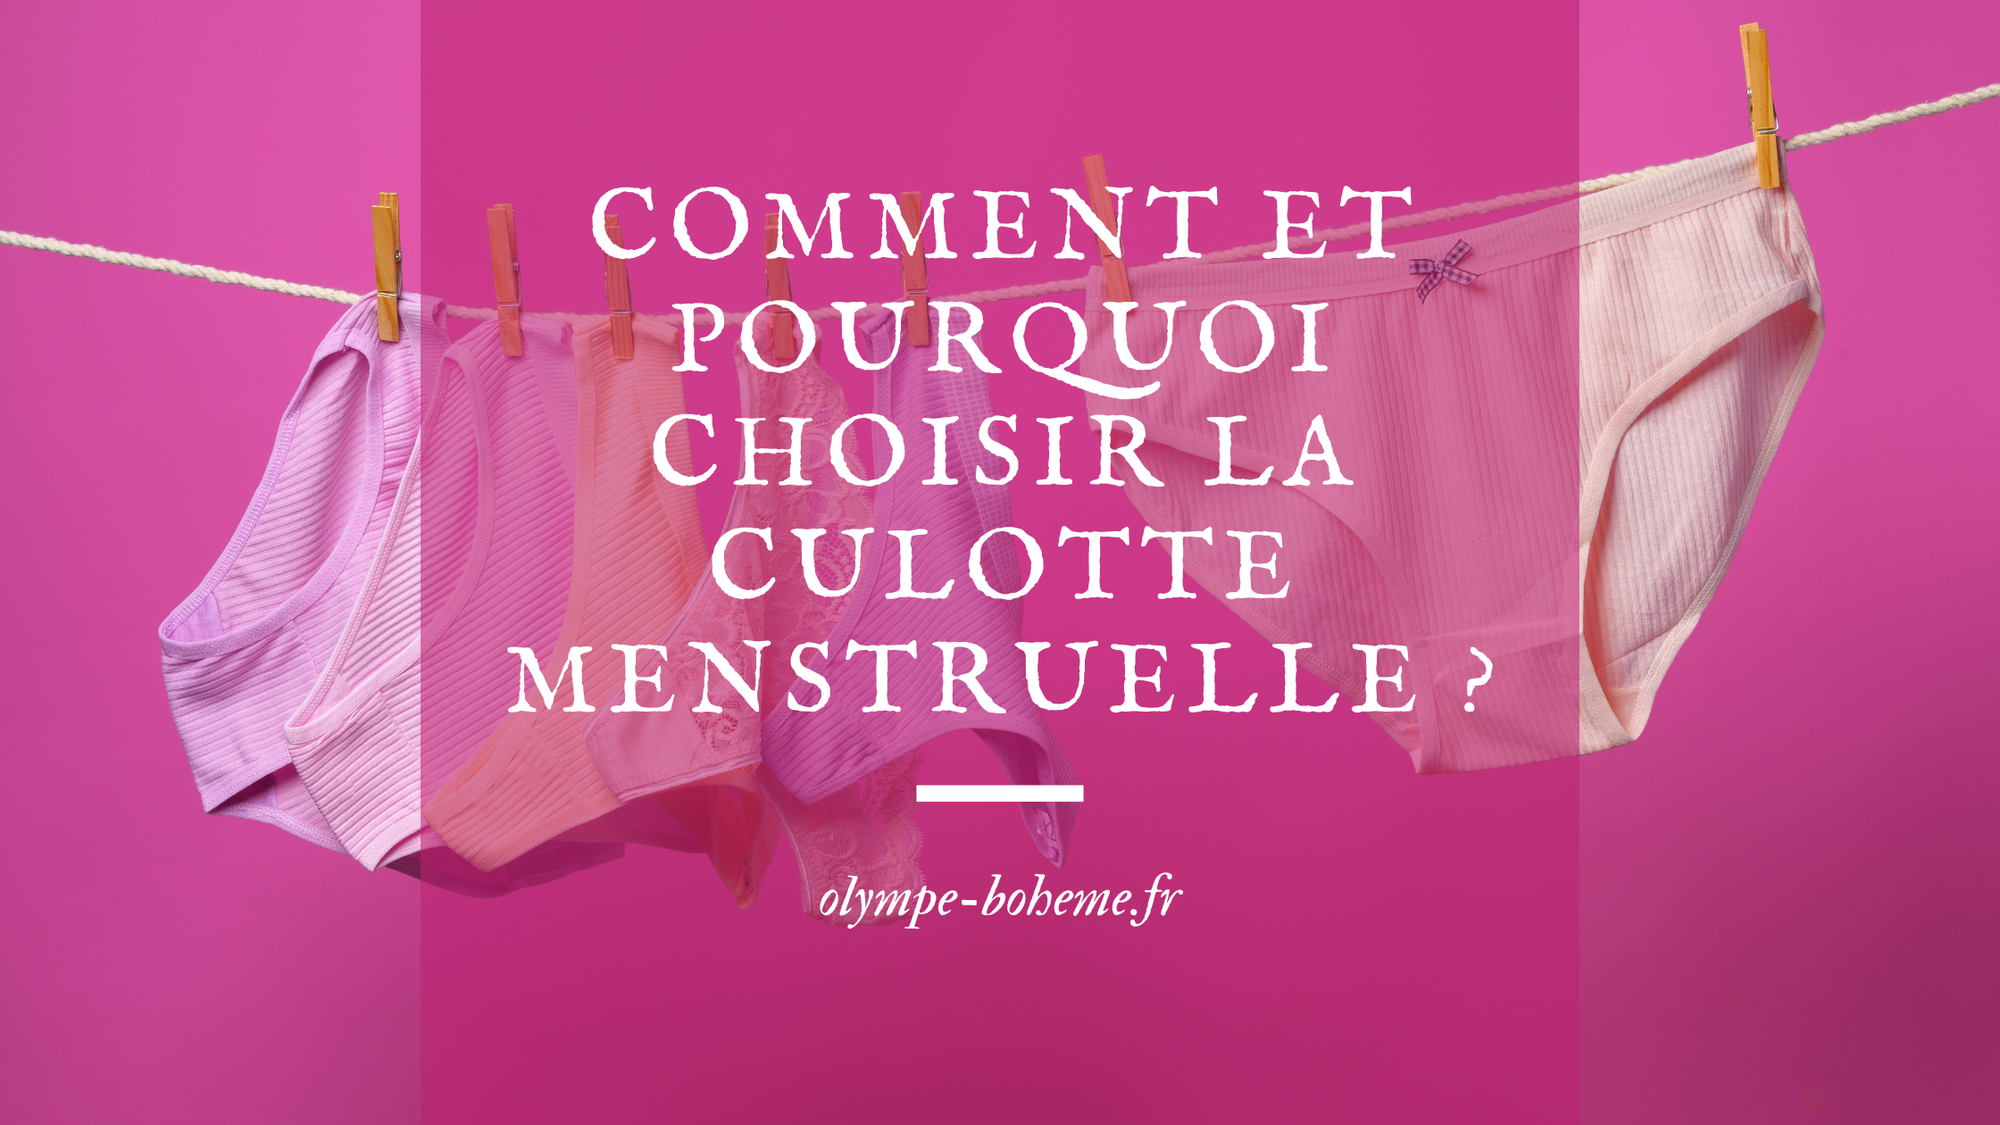 Comment et pourquoi choisir la culotte menstruelle ?